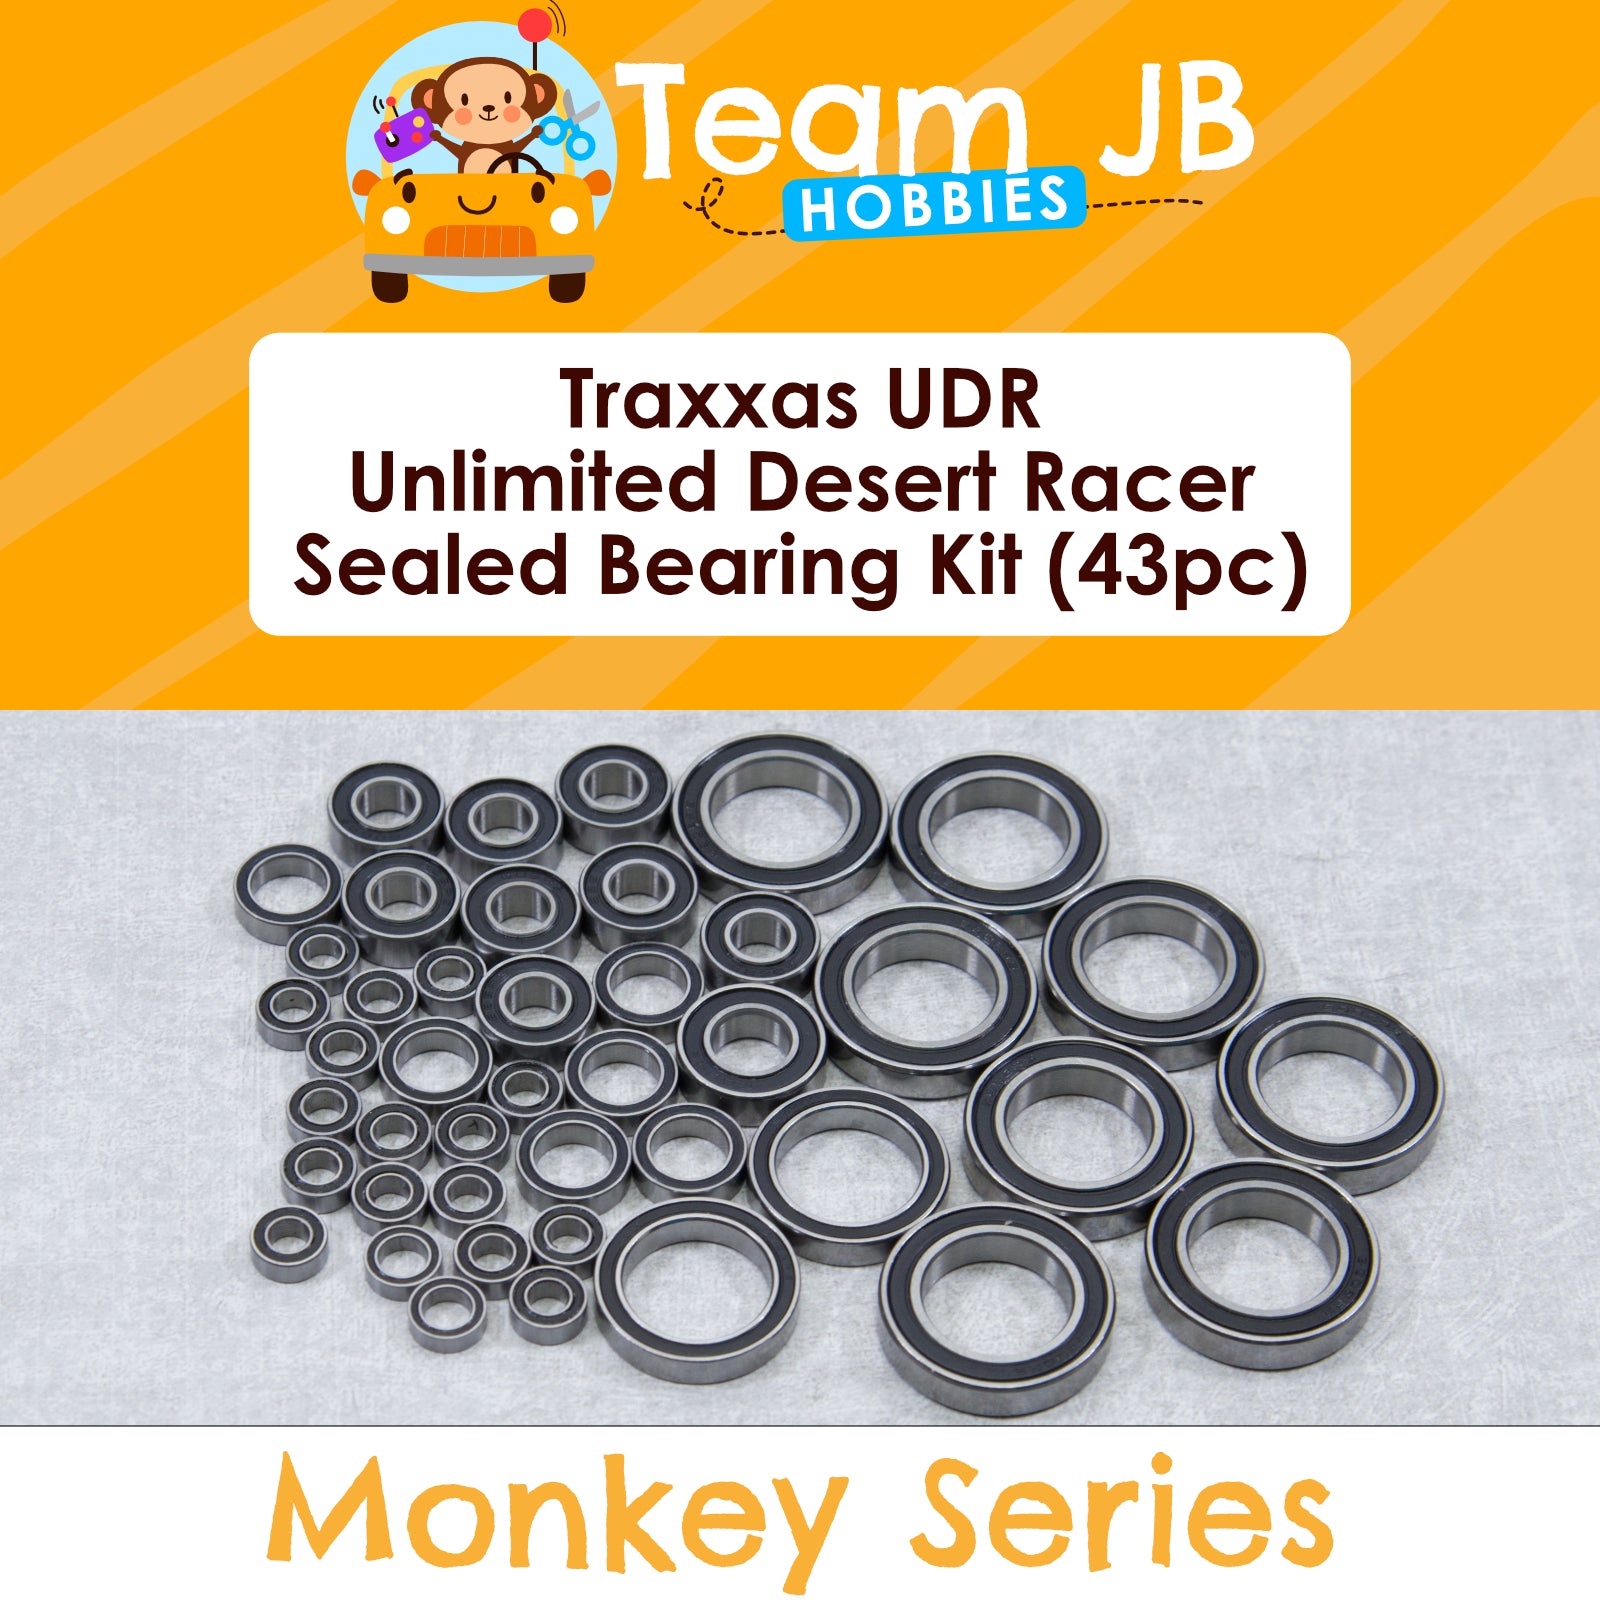 Traxxas UDR - Unlimited Desert Racer - Sealed Bearing Kit